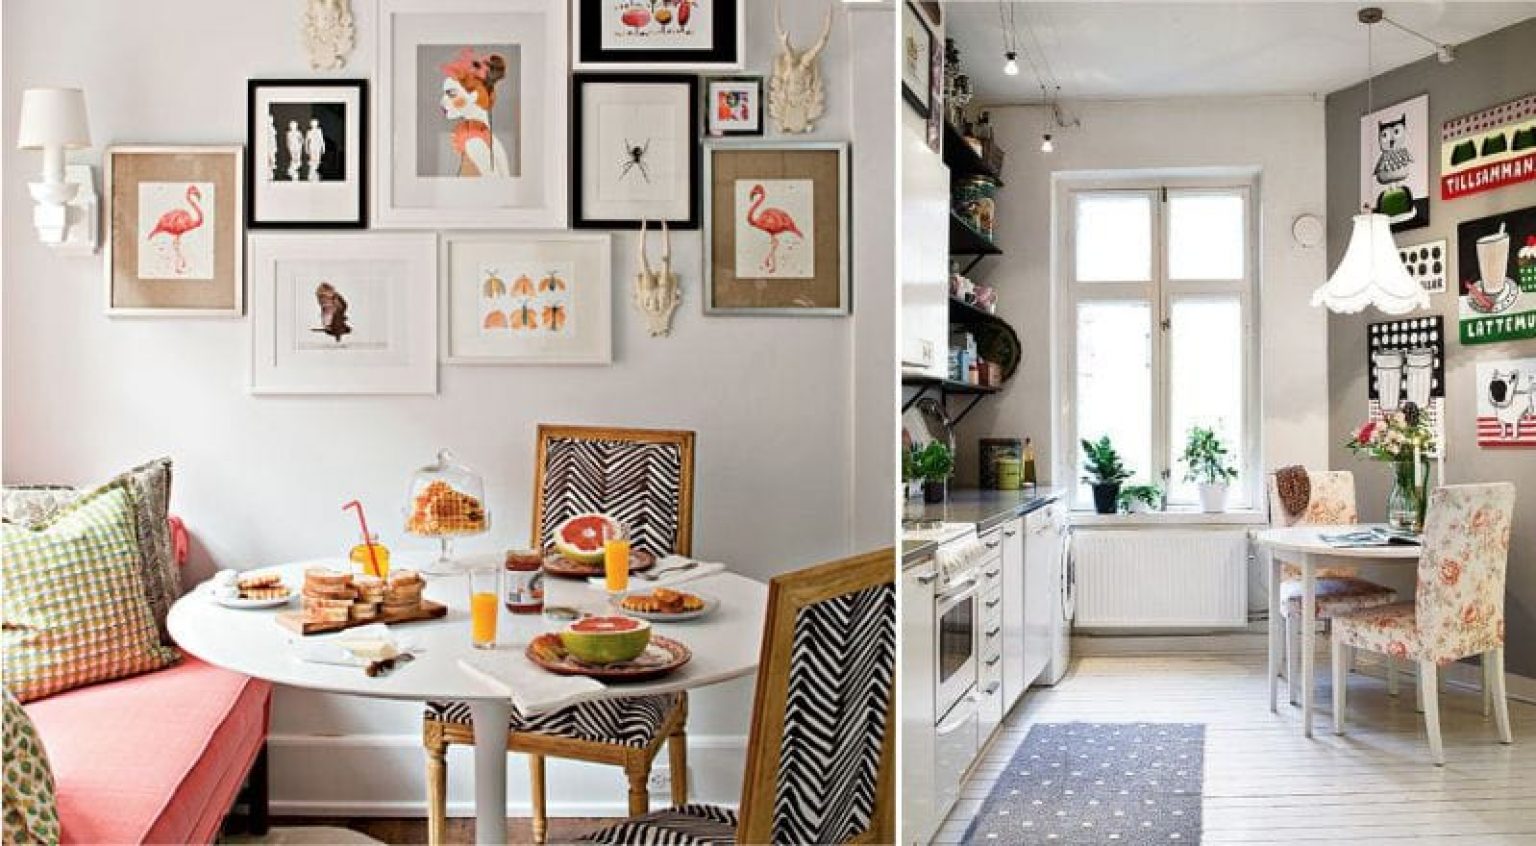 Картины на кухне в интерьере фото